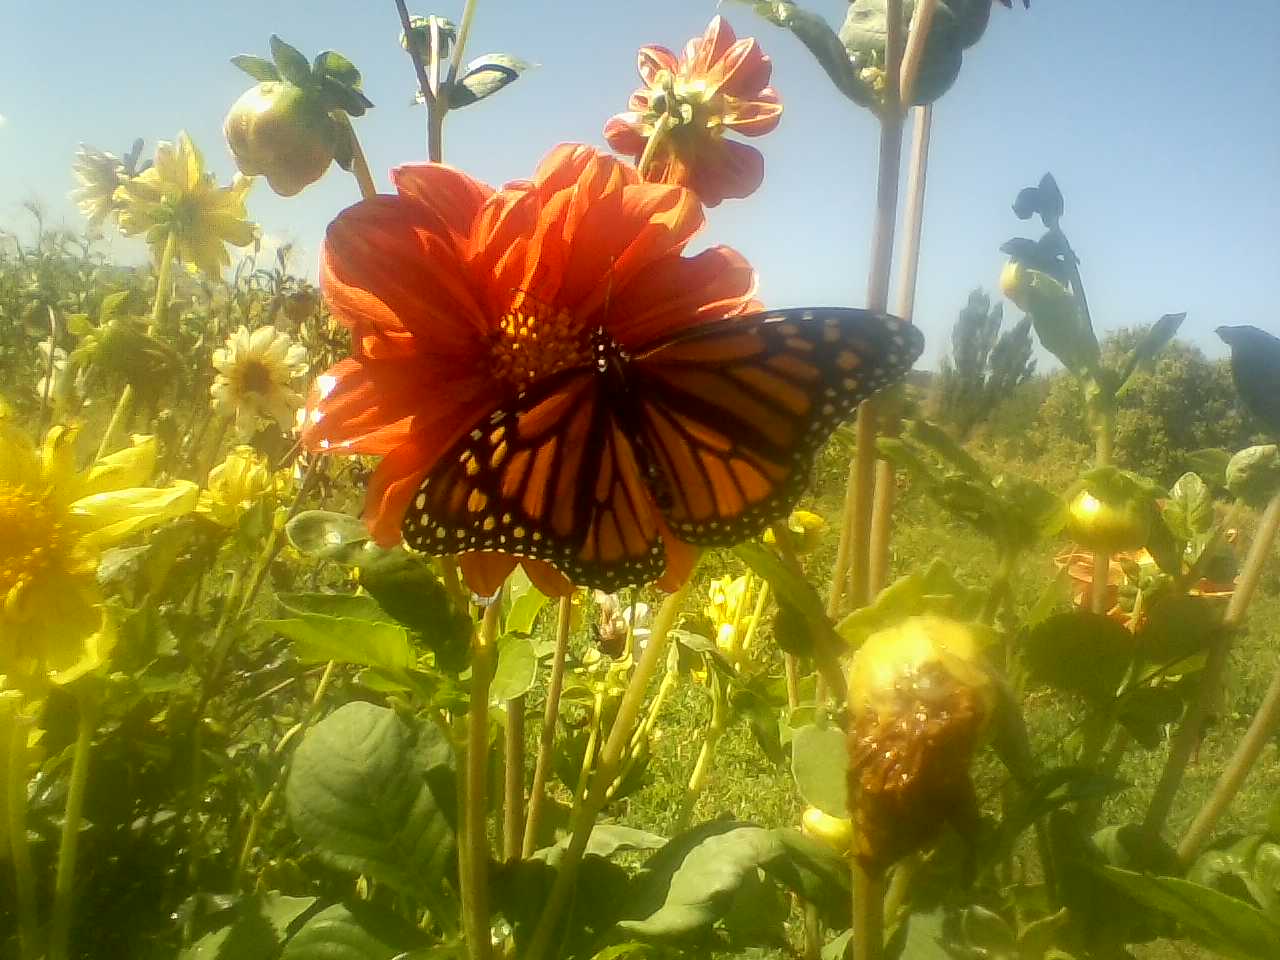 Monarch butterfly on dahlia